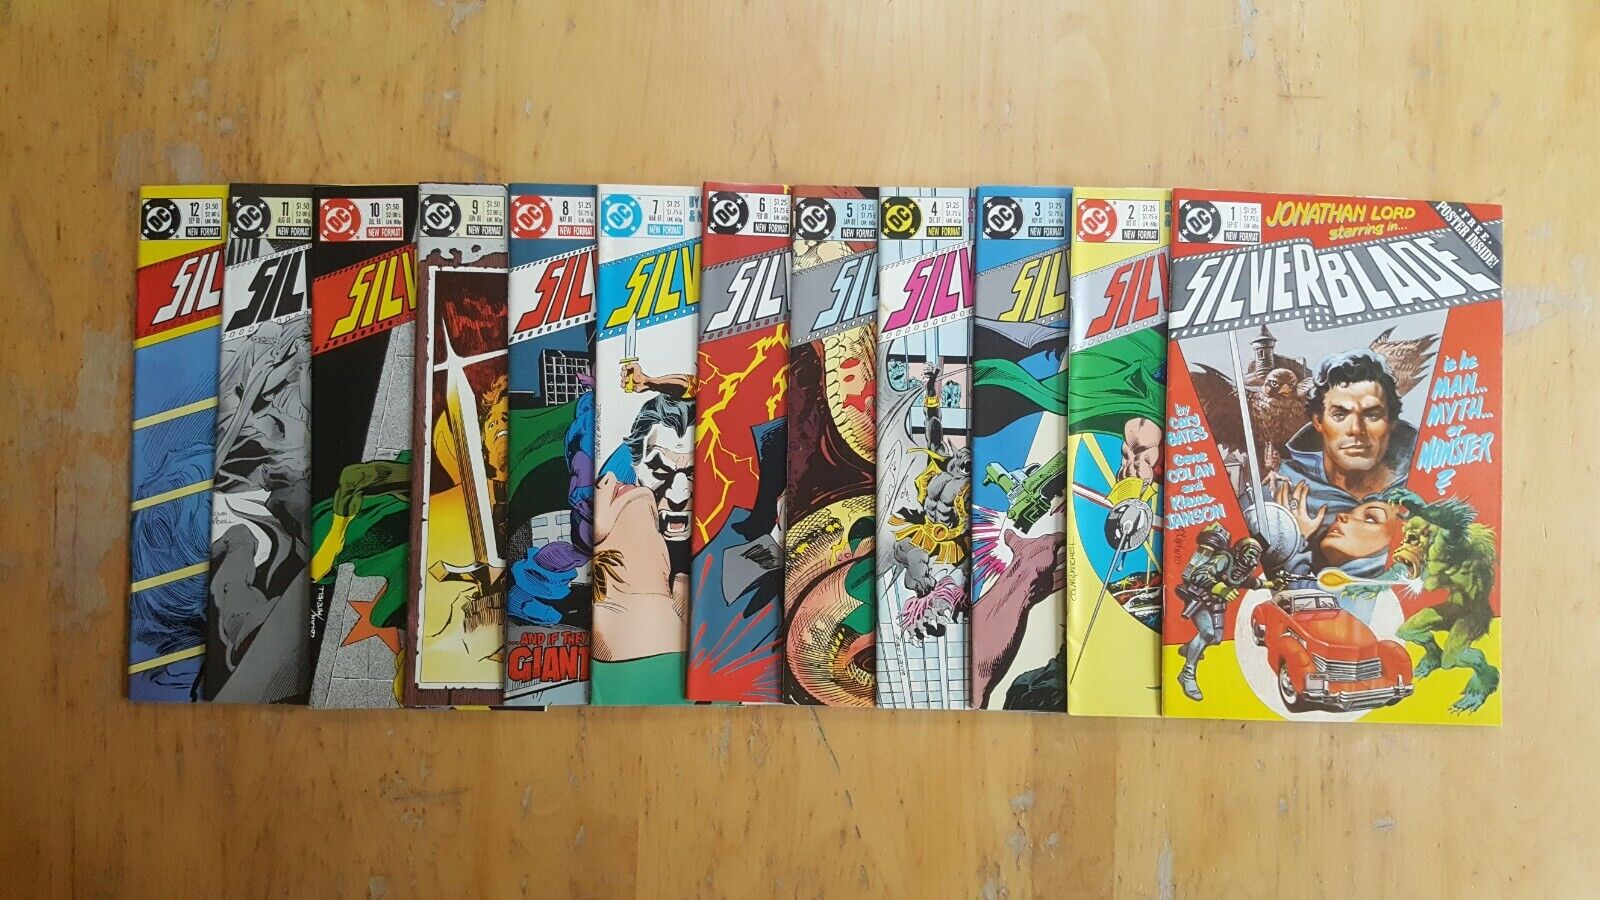 Silverblade #1-12. Full Run (1987-88, DC Comics) 9.0 Very Fine/Near Mint